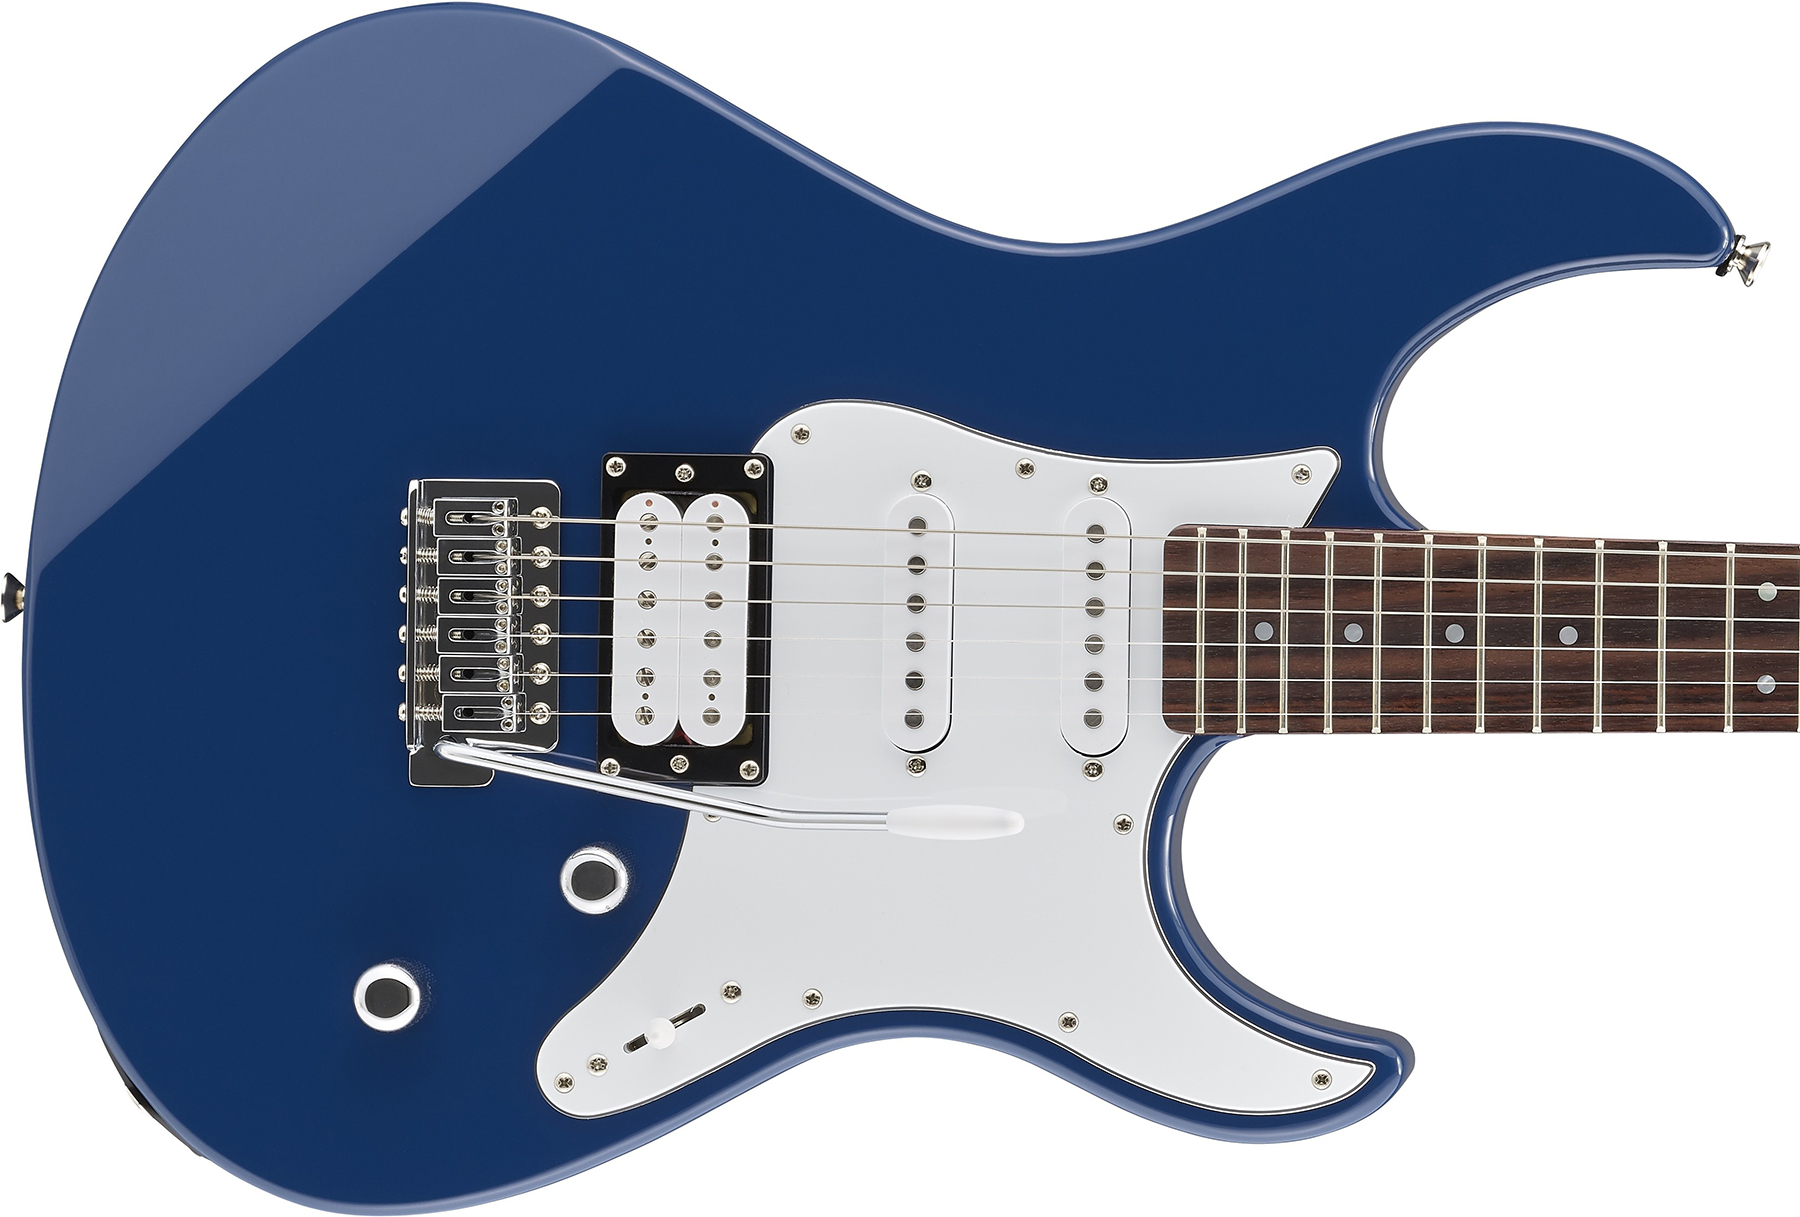 Yamaha Pacifica Pac112v Hss Trem Rw - United Blue - Guitarra eléctrica con forma de str. - Variation 1